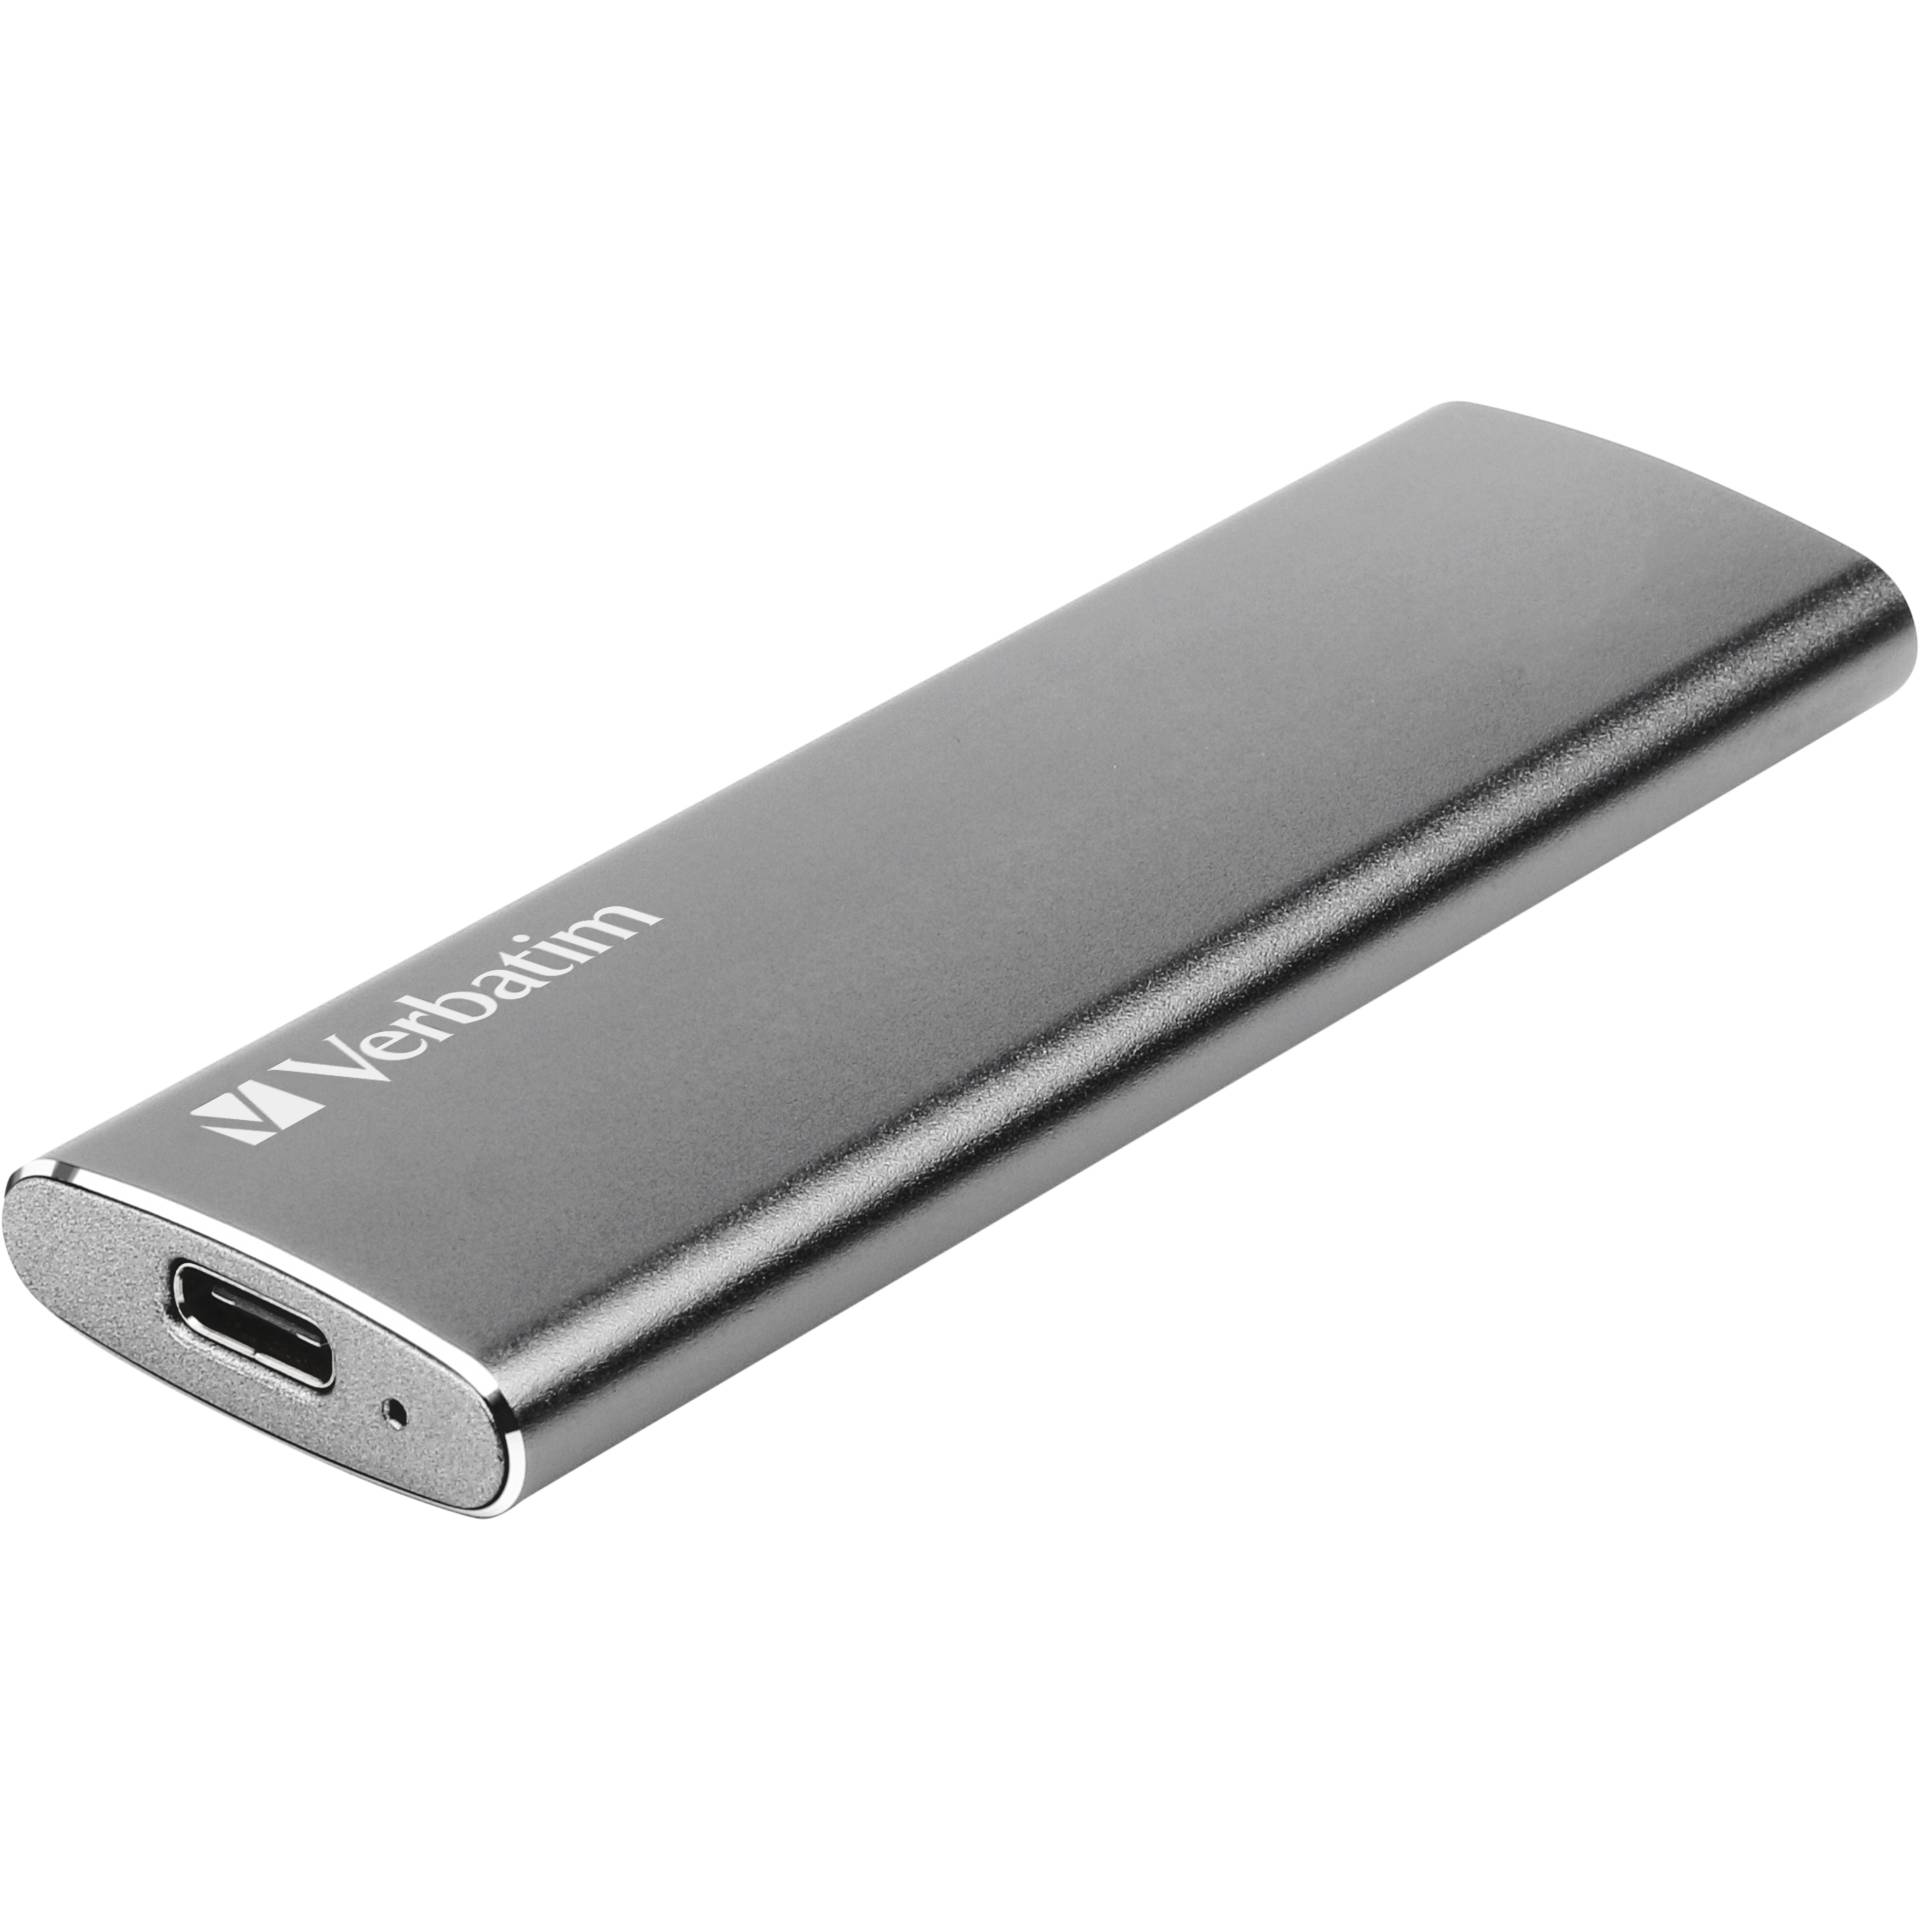 120 GB SSD M.2 Verbatim Vx500 External Solid State Drive extern, USB-C 3.1